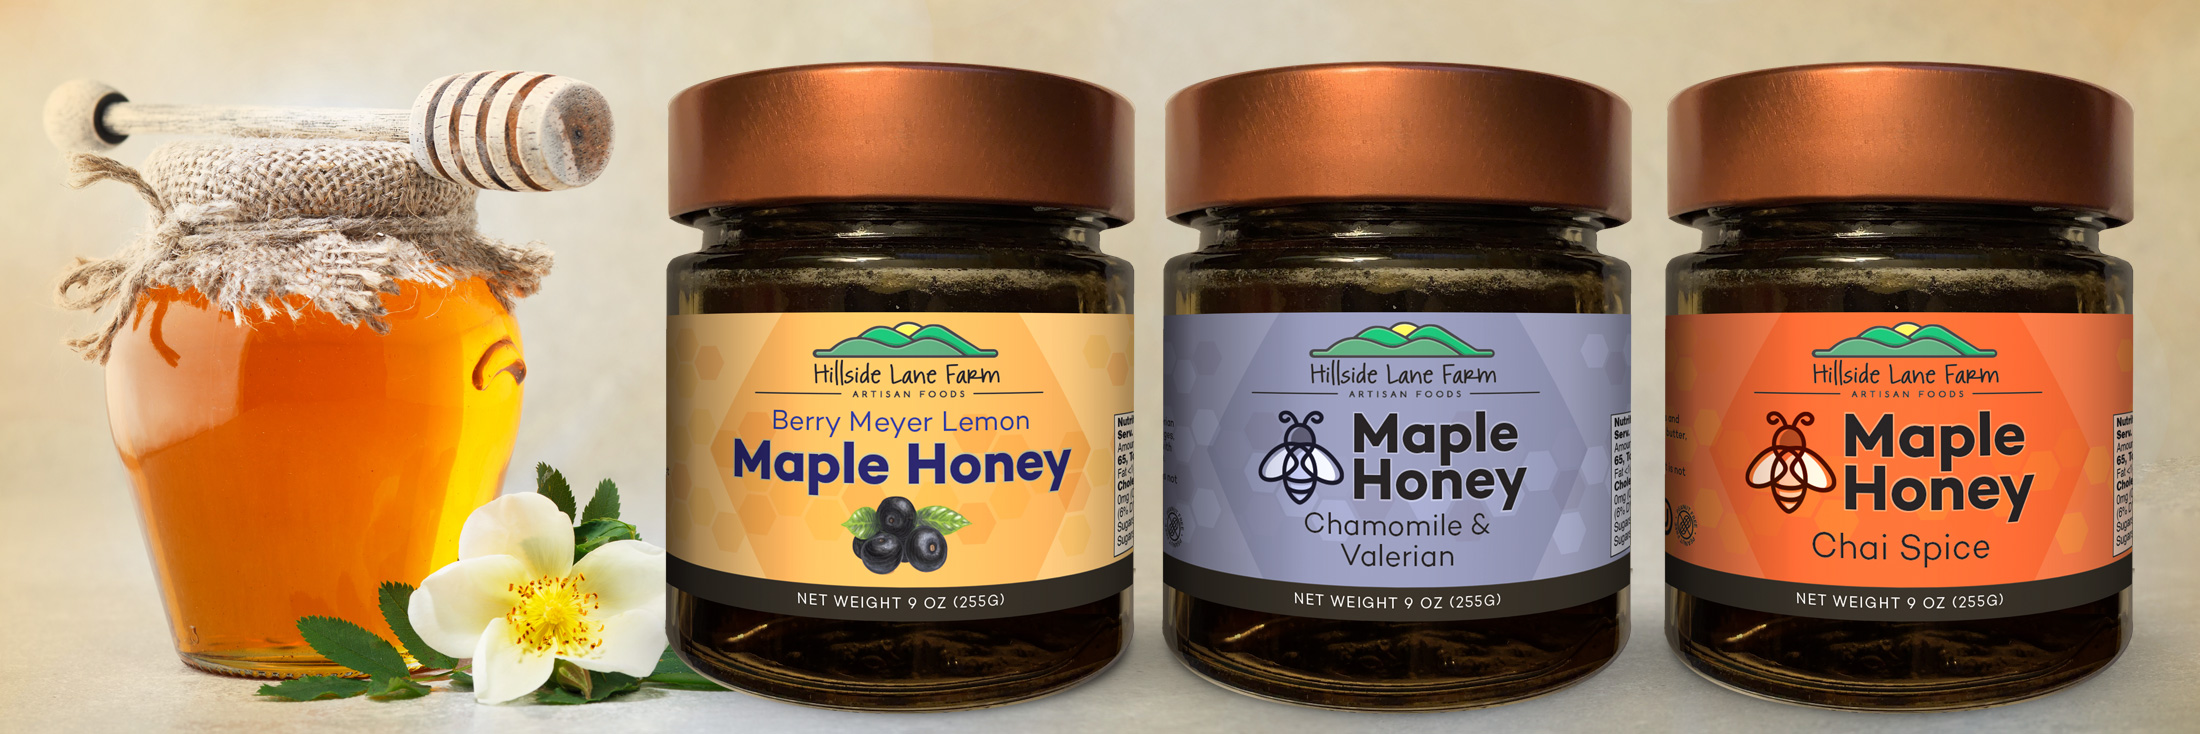 Gluten Free and Kosher Maple Honey